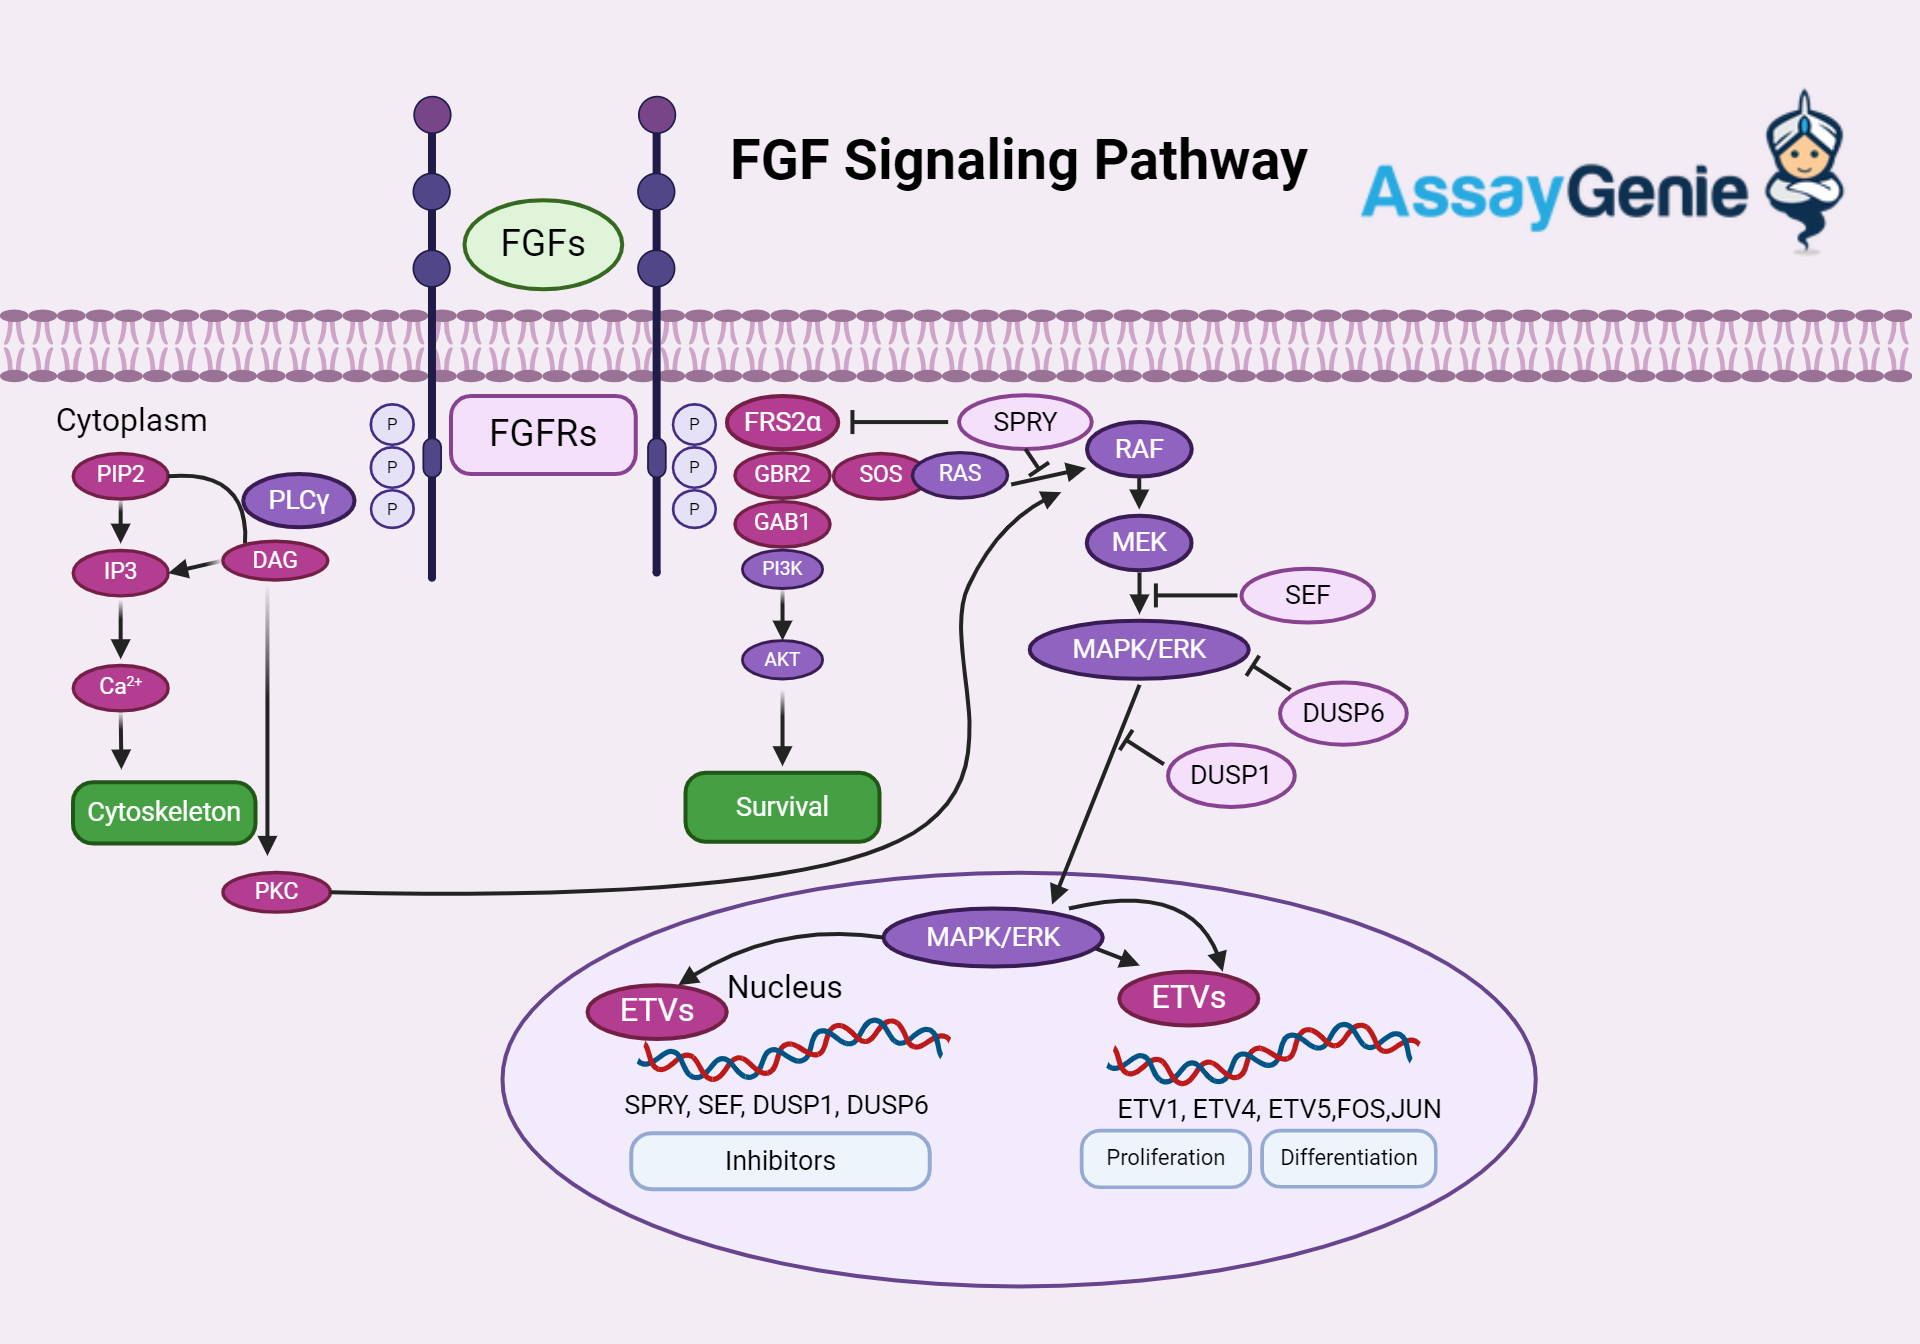 FGF Signaling Pathway